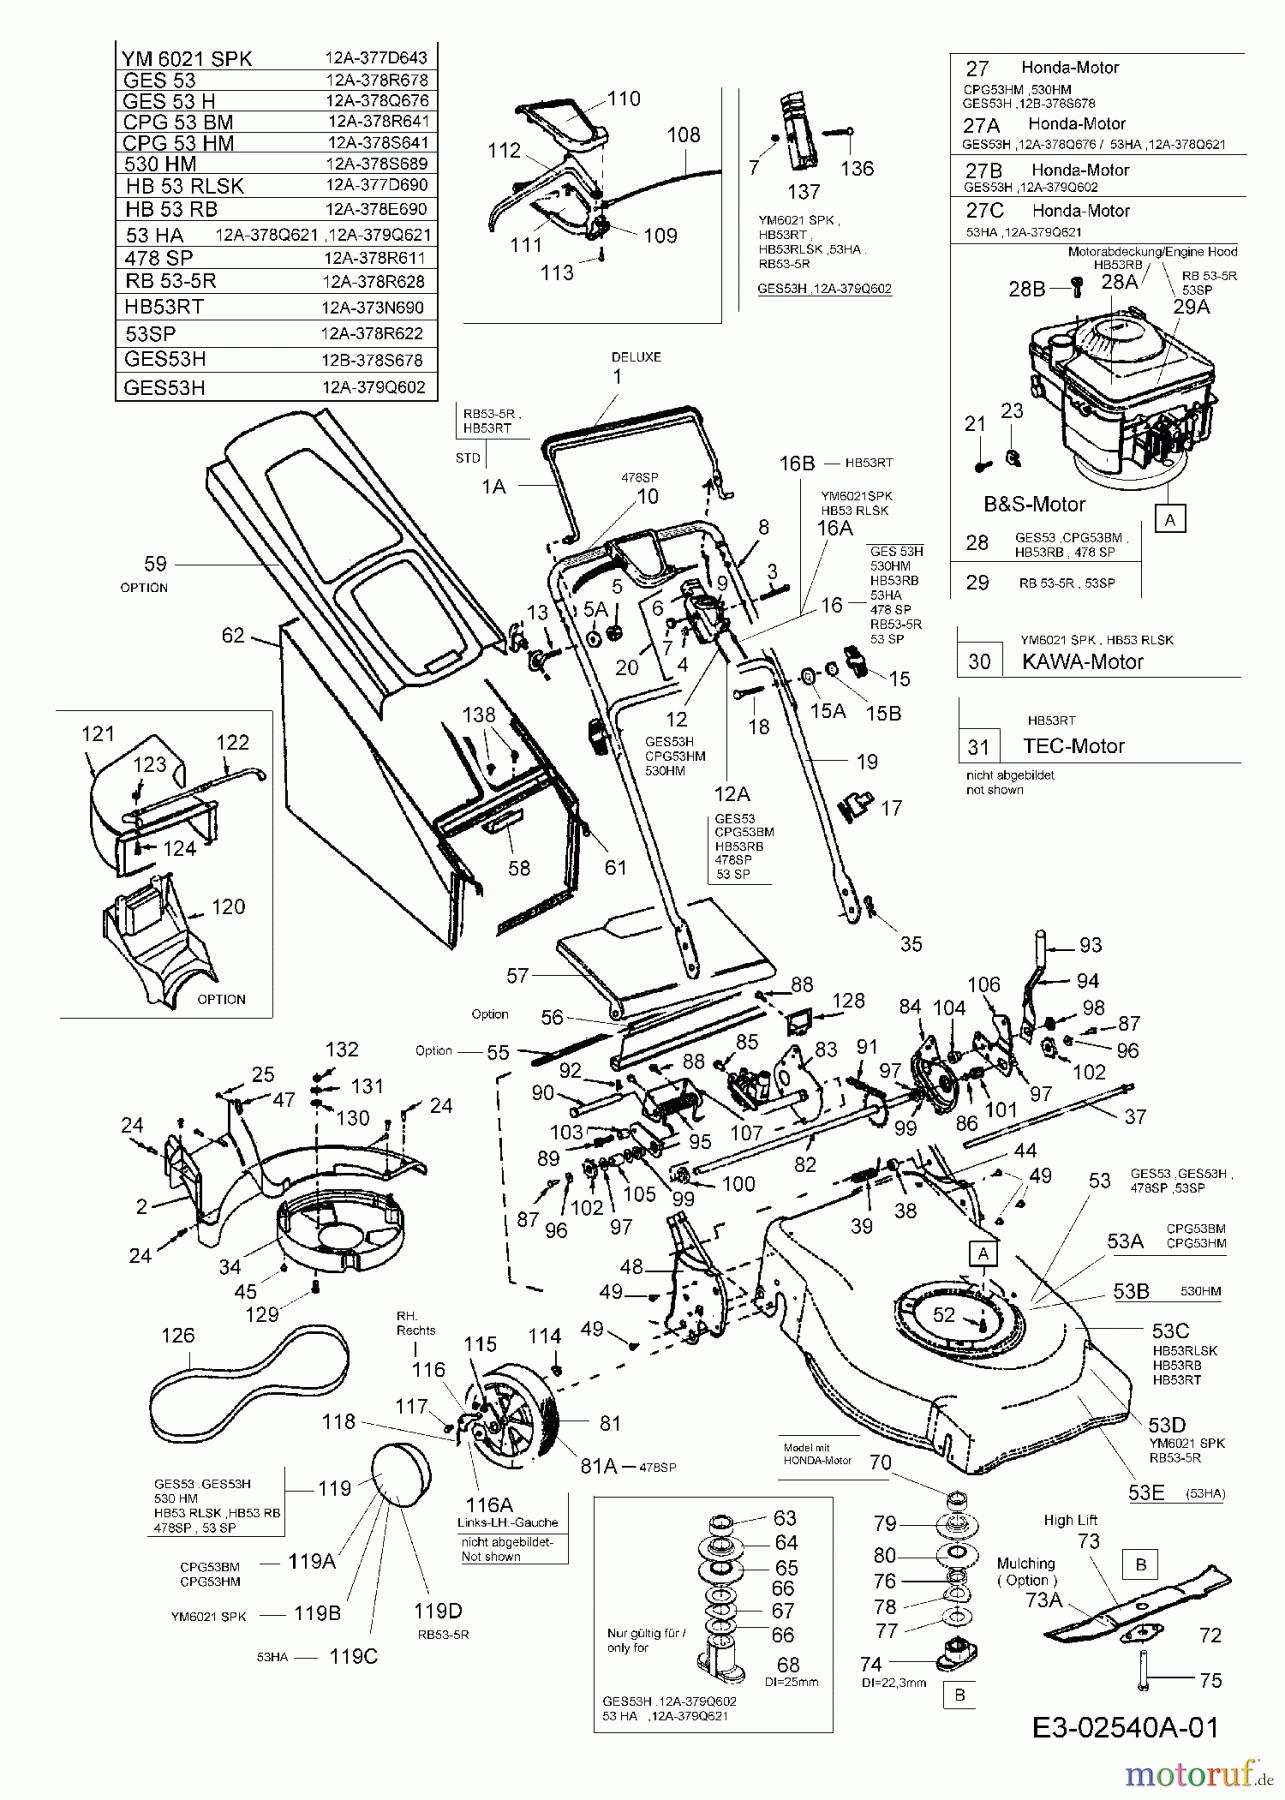  MTD Motormäher mit Antrieb GES 53 H 12A-379Q602  (2005) Grundgerät